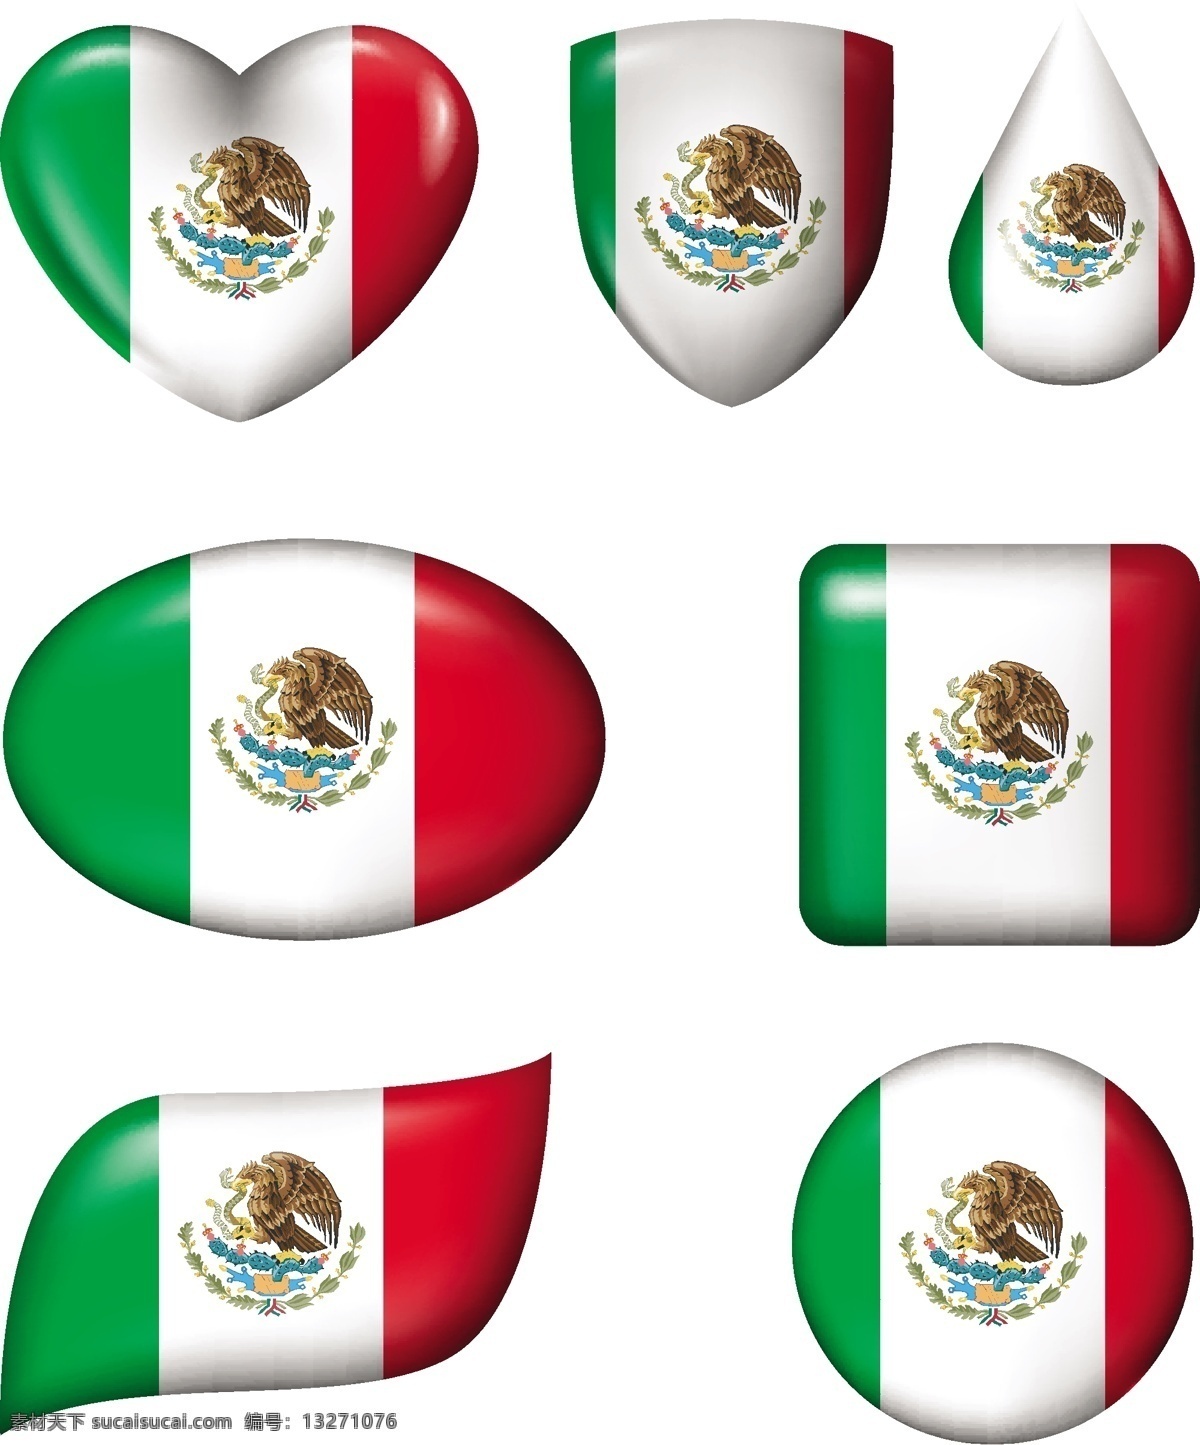 墨西哥 国旗 形状 图案 圆形 椭圆 方形 墨西哥国旗 矢量图案 鹰 蛇 仙人掌 月桂树 三色图案 边框底纹 背景图案 生活百科 矢量素材 白色